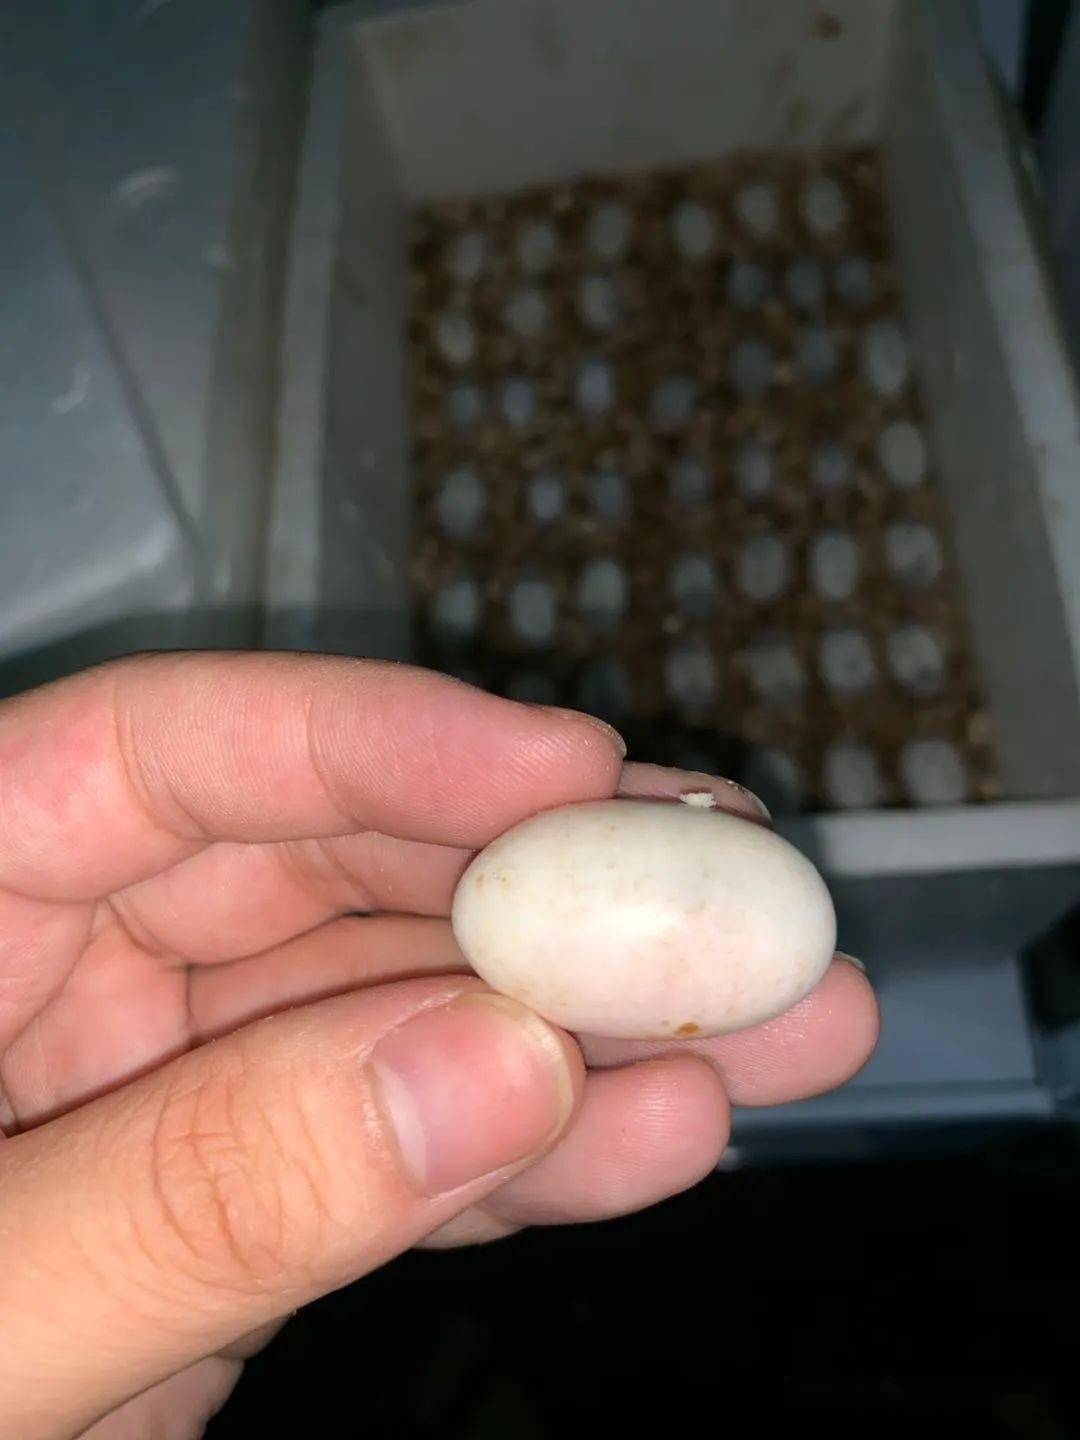 (图文详解)龟蛋孵化过程中如何挑出"坏蛋"